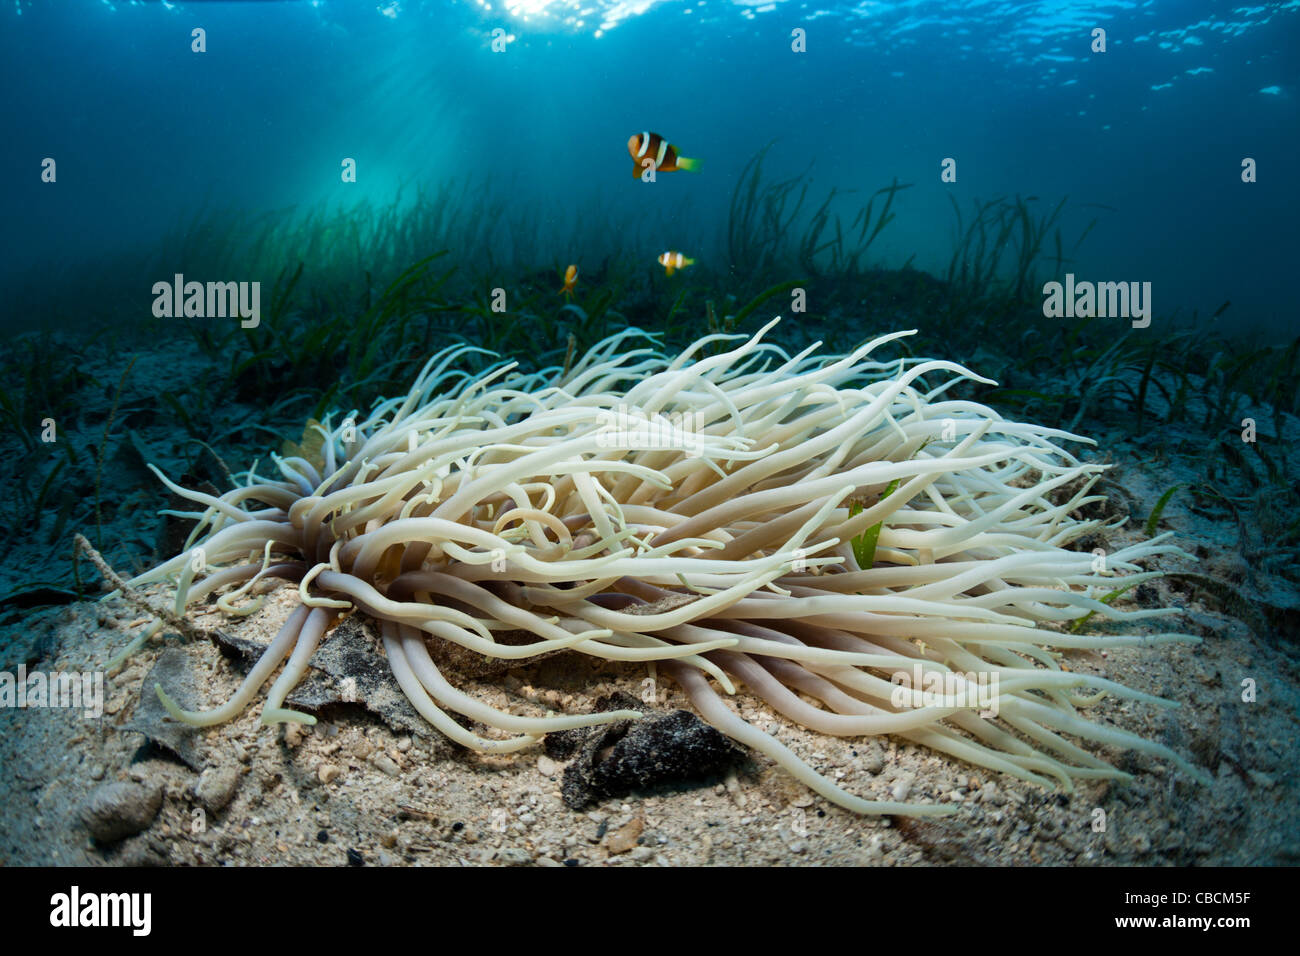 Anémone de mer cuir Clarks avec poisson clown dans les herbiers marins Heteractis crispa Amphiprion clarki, Cenderawasih Bay Indonésie Banque D'Images